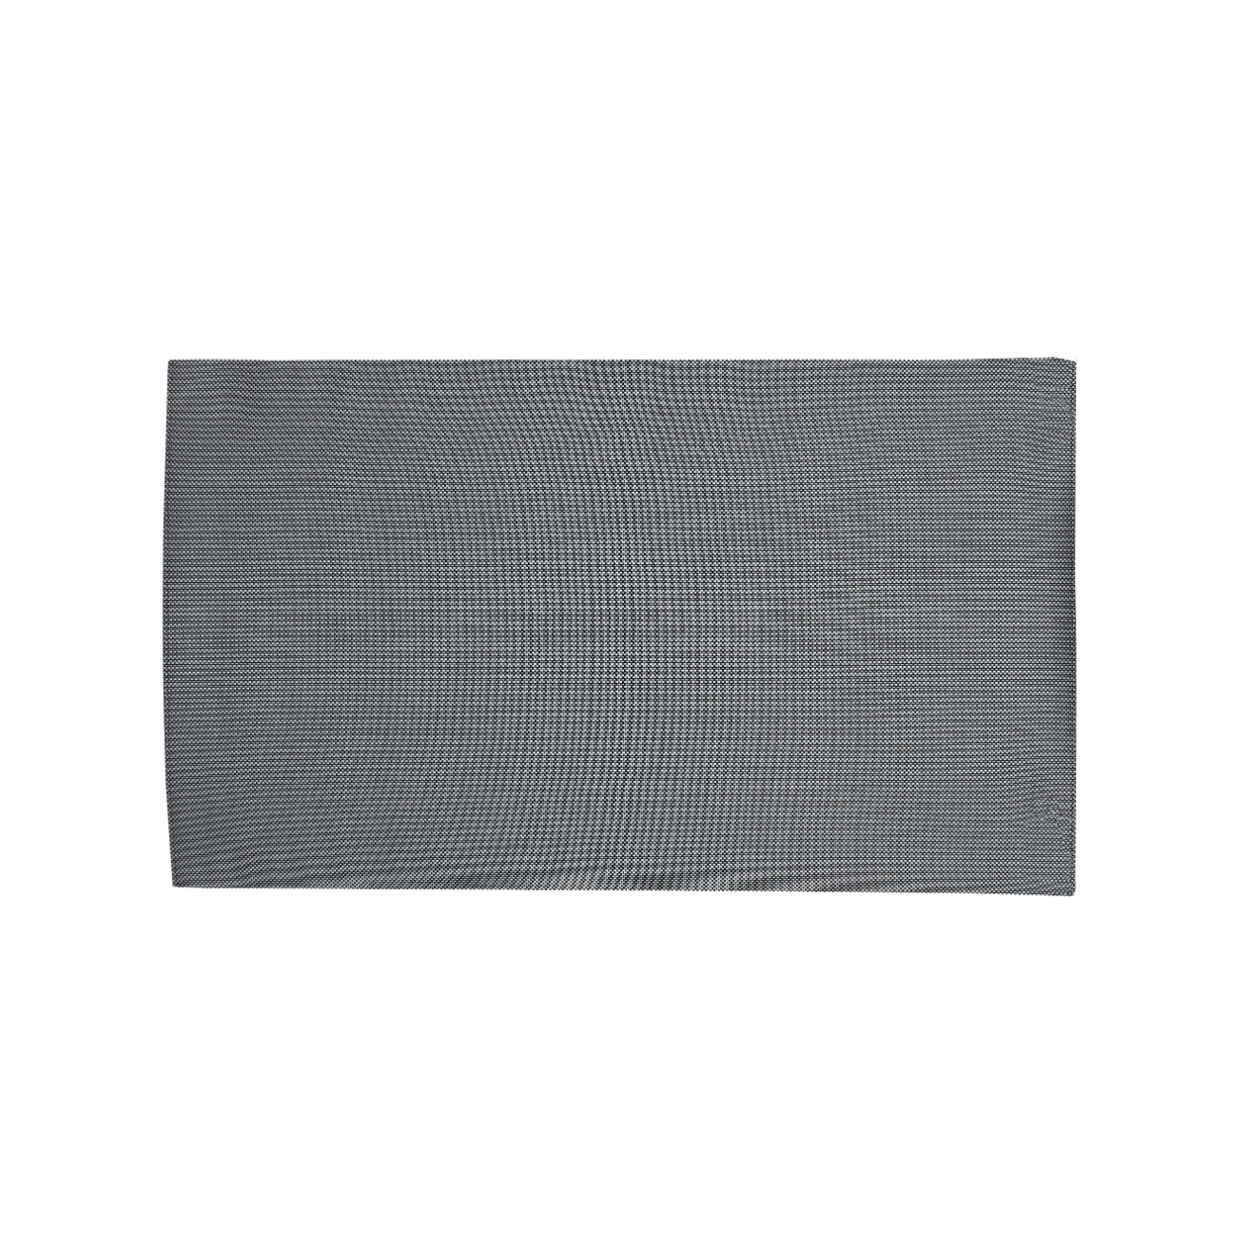 Indoor Outdoor Mat, Black, Grey, 5' x 8'